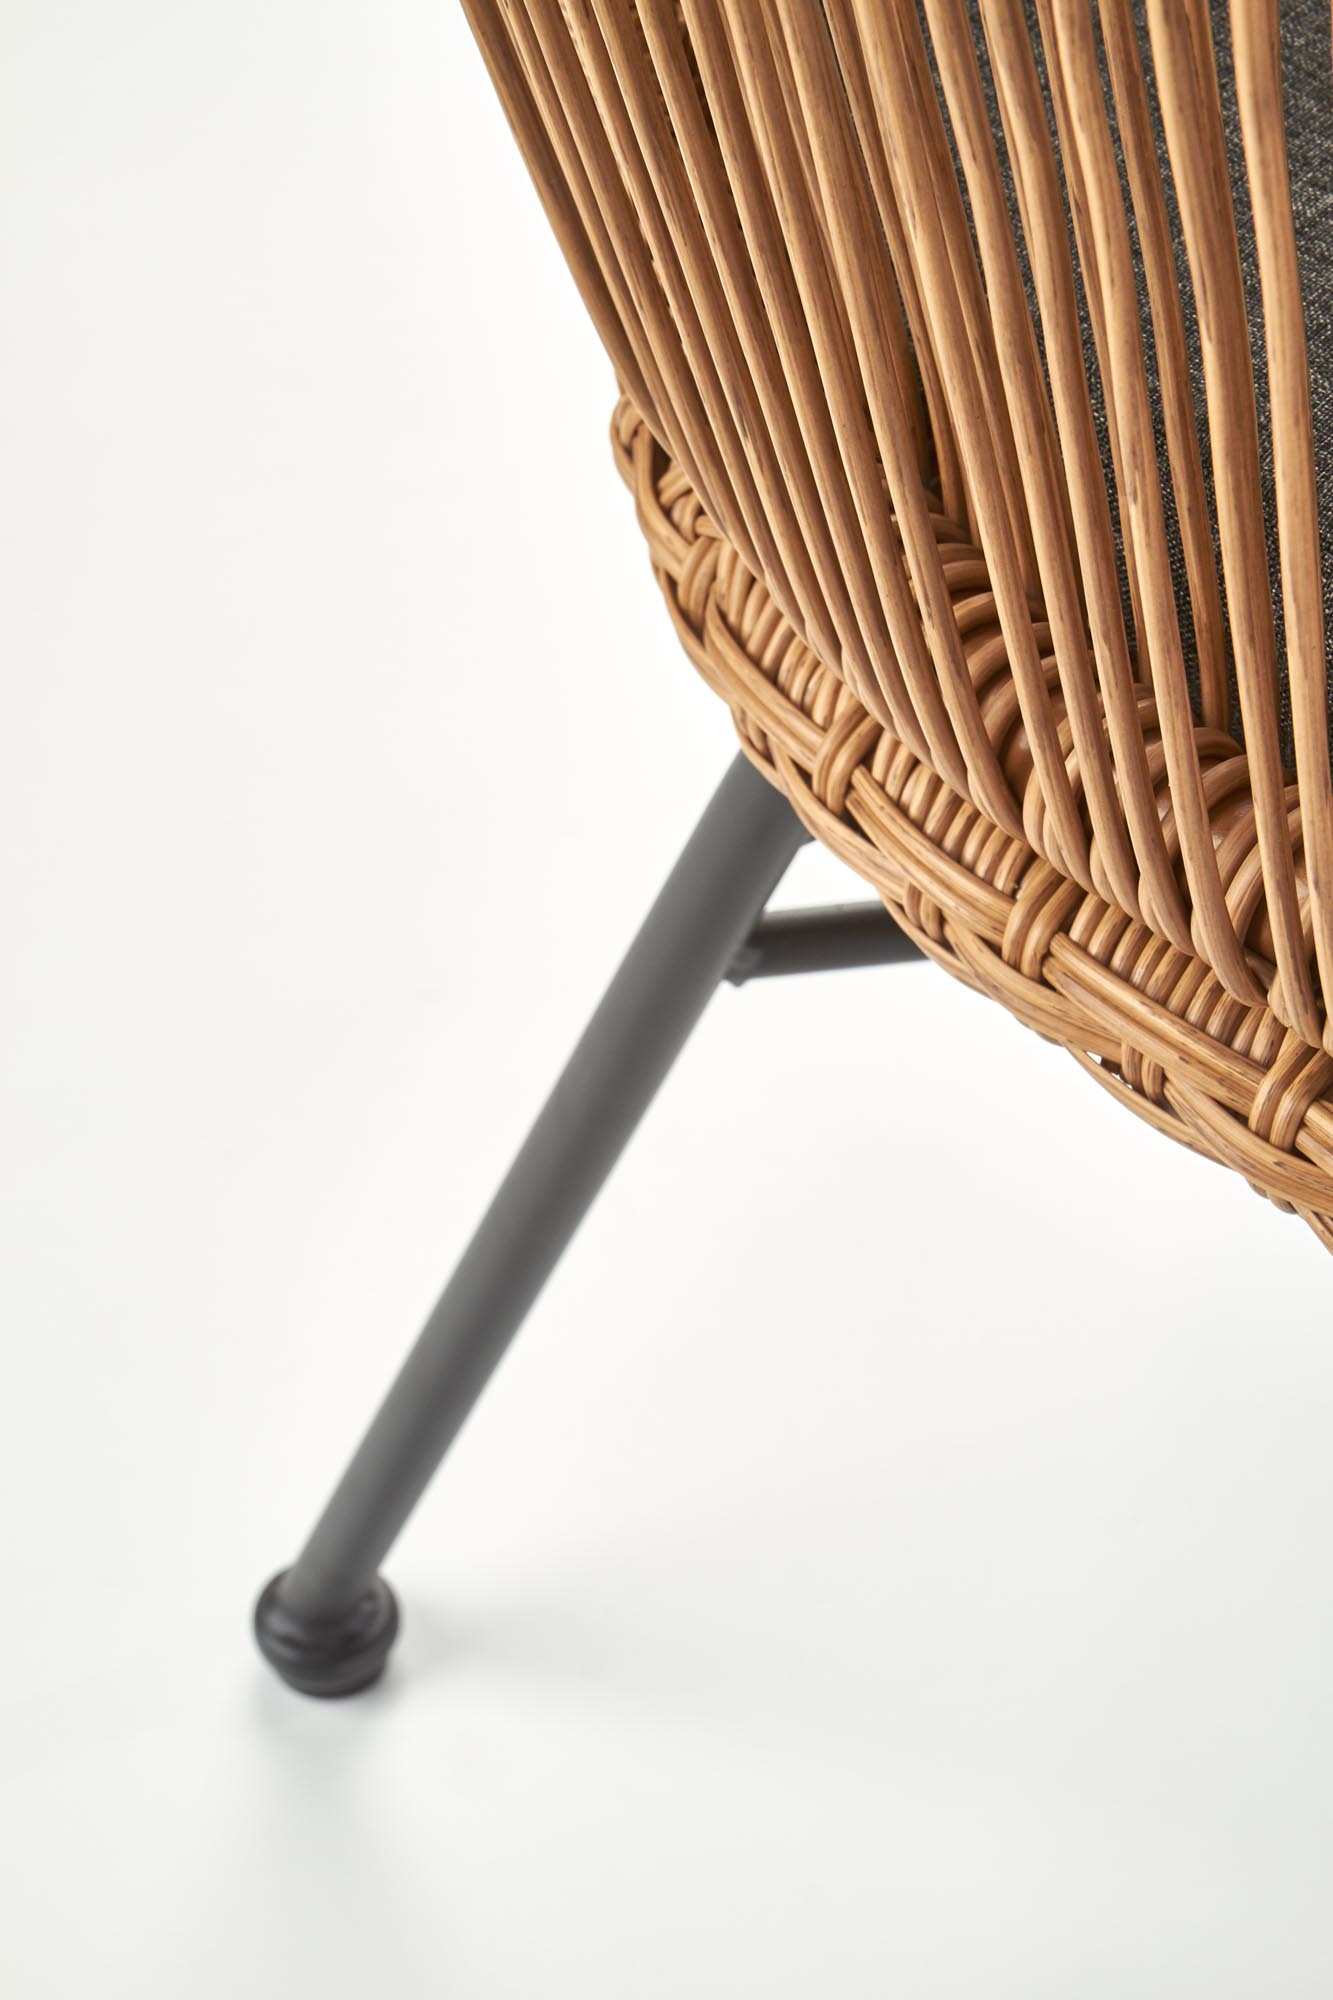 K400 krzesło czarny / naturalny / popielaty k400 krzesło czarny / naturalny / popielaty